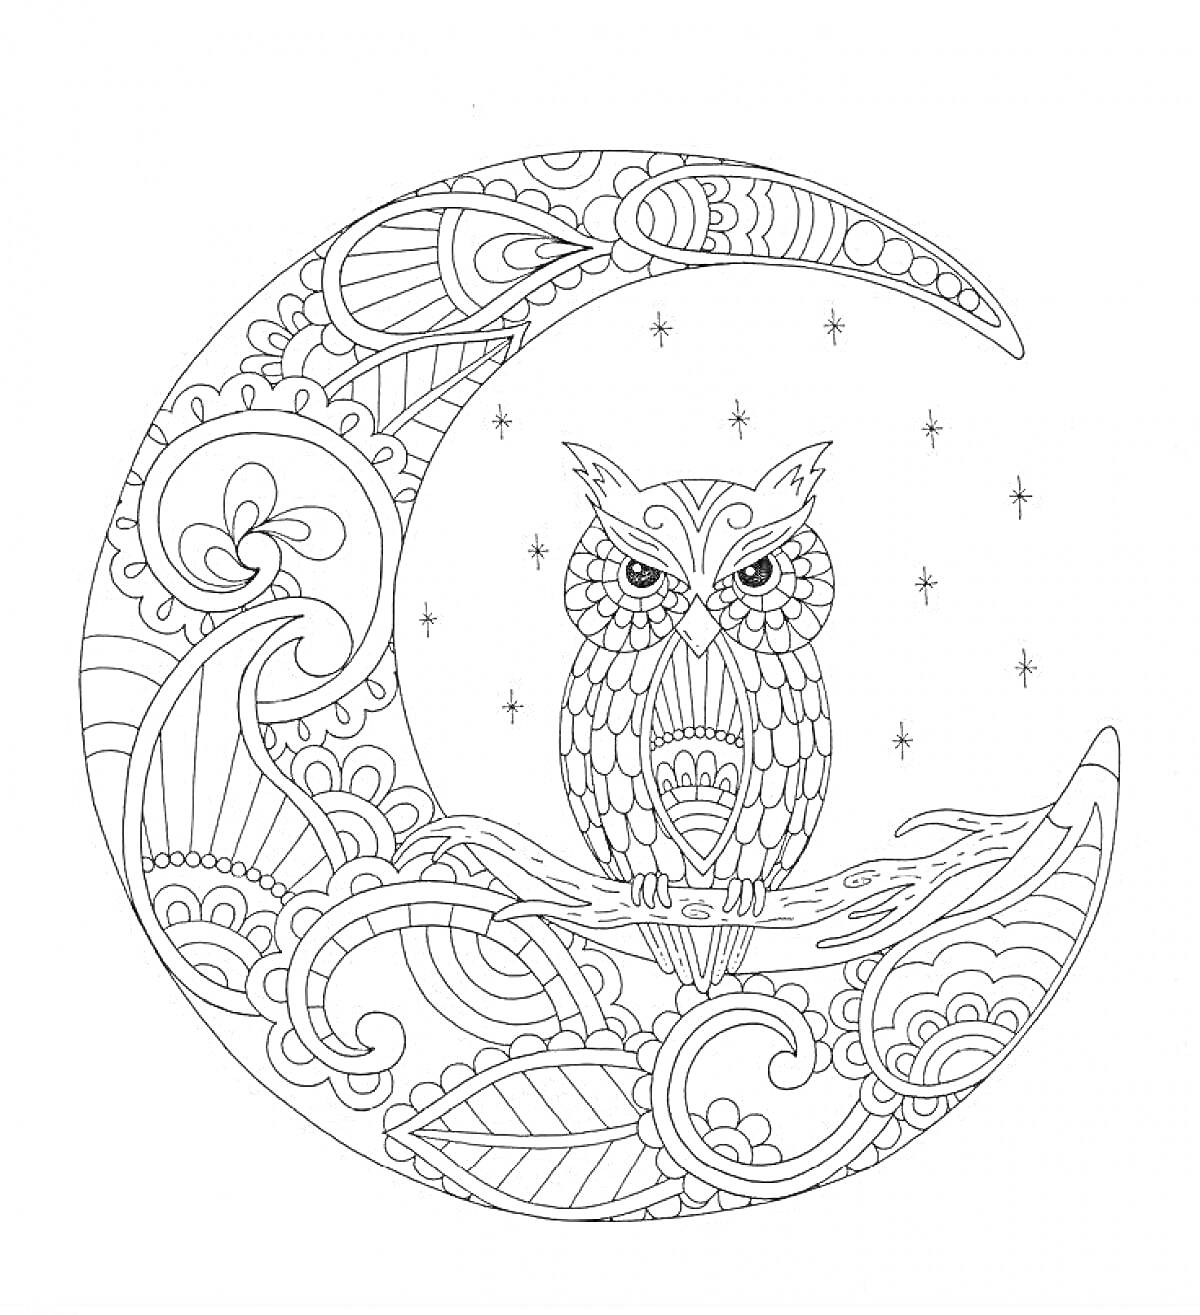 Раскраска Сова на ветке в дизайне полумесяца с узорами и звездами